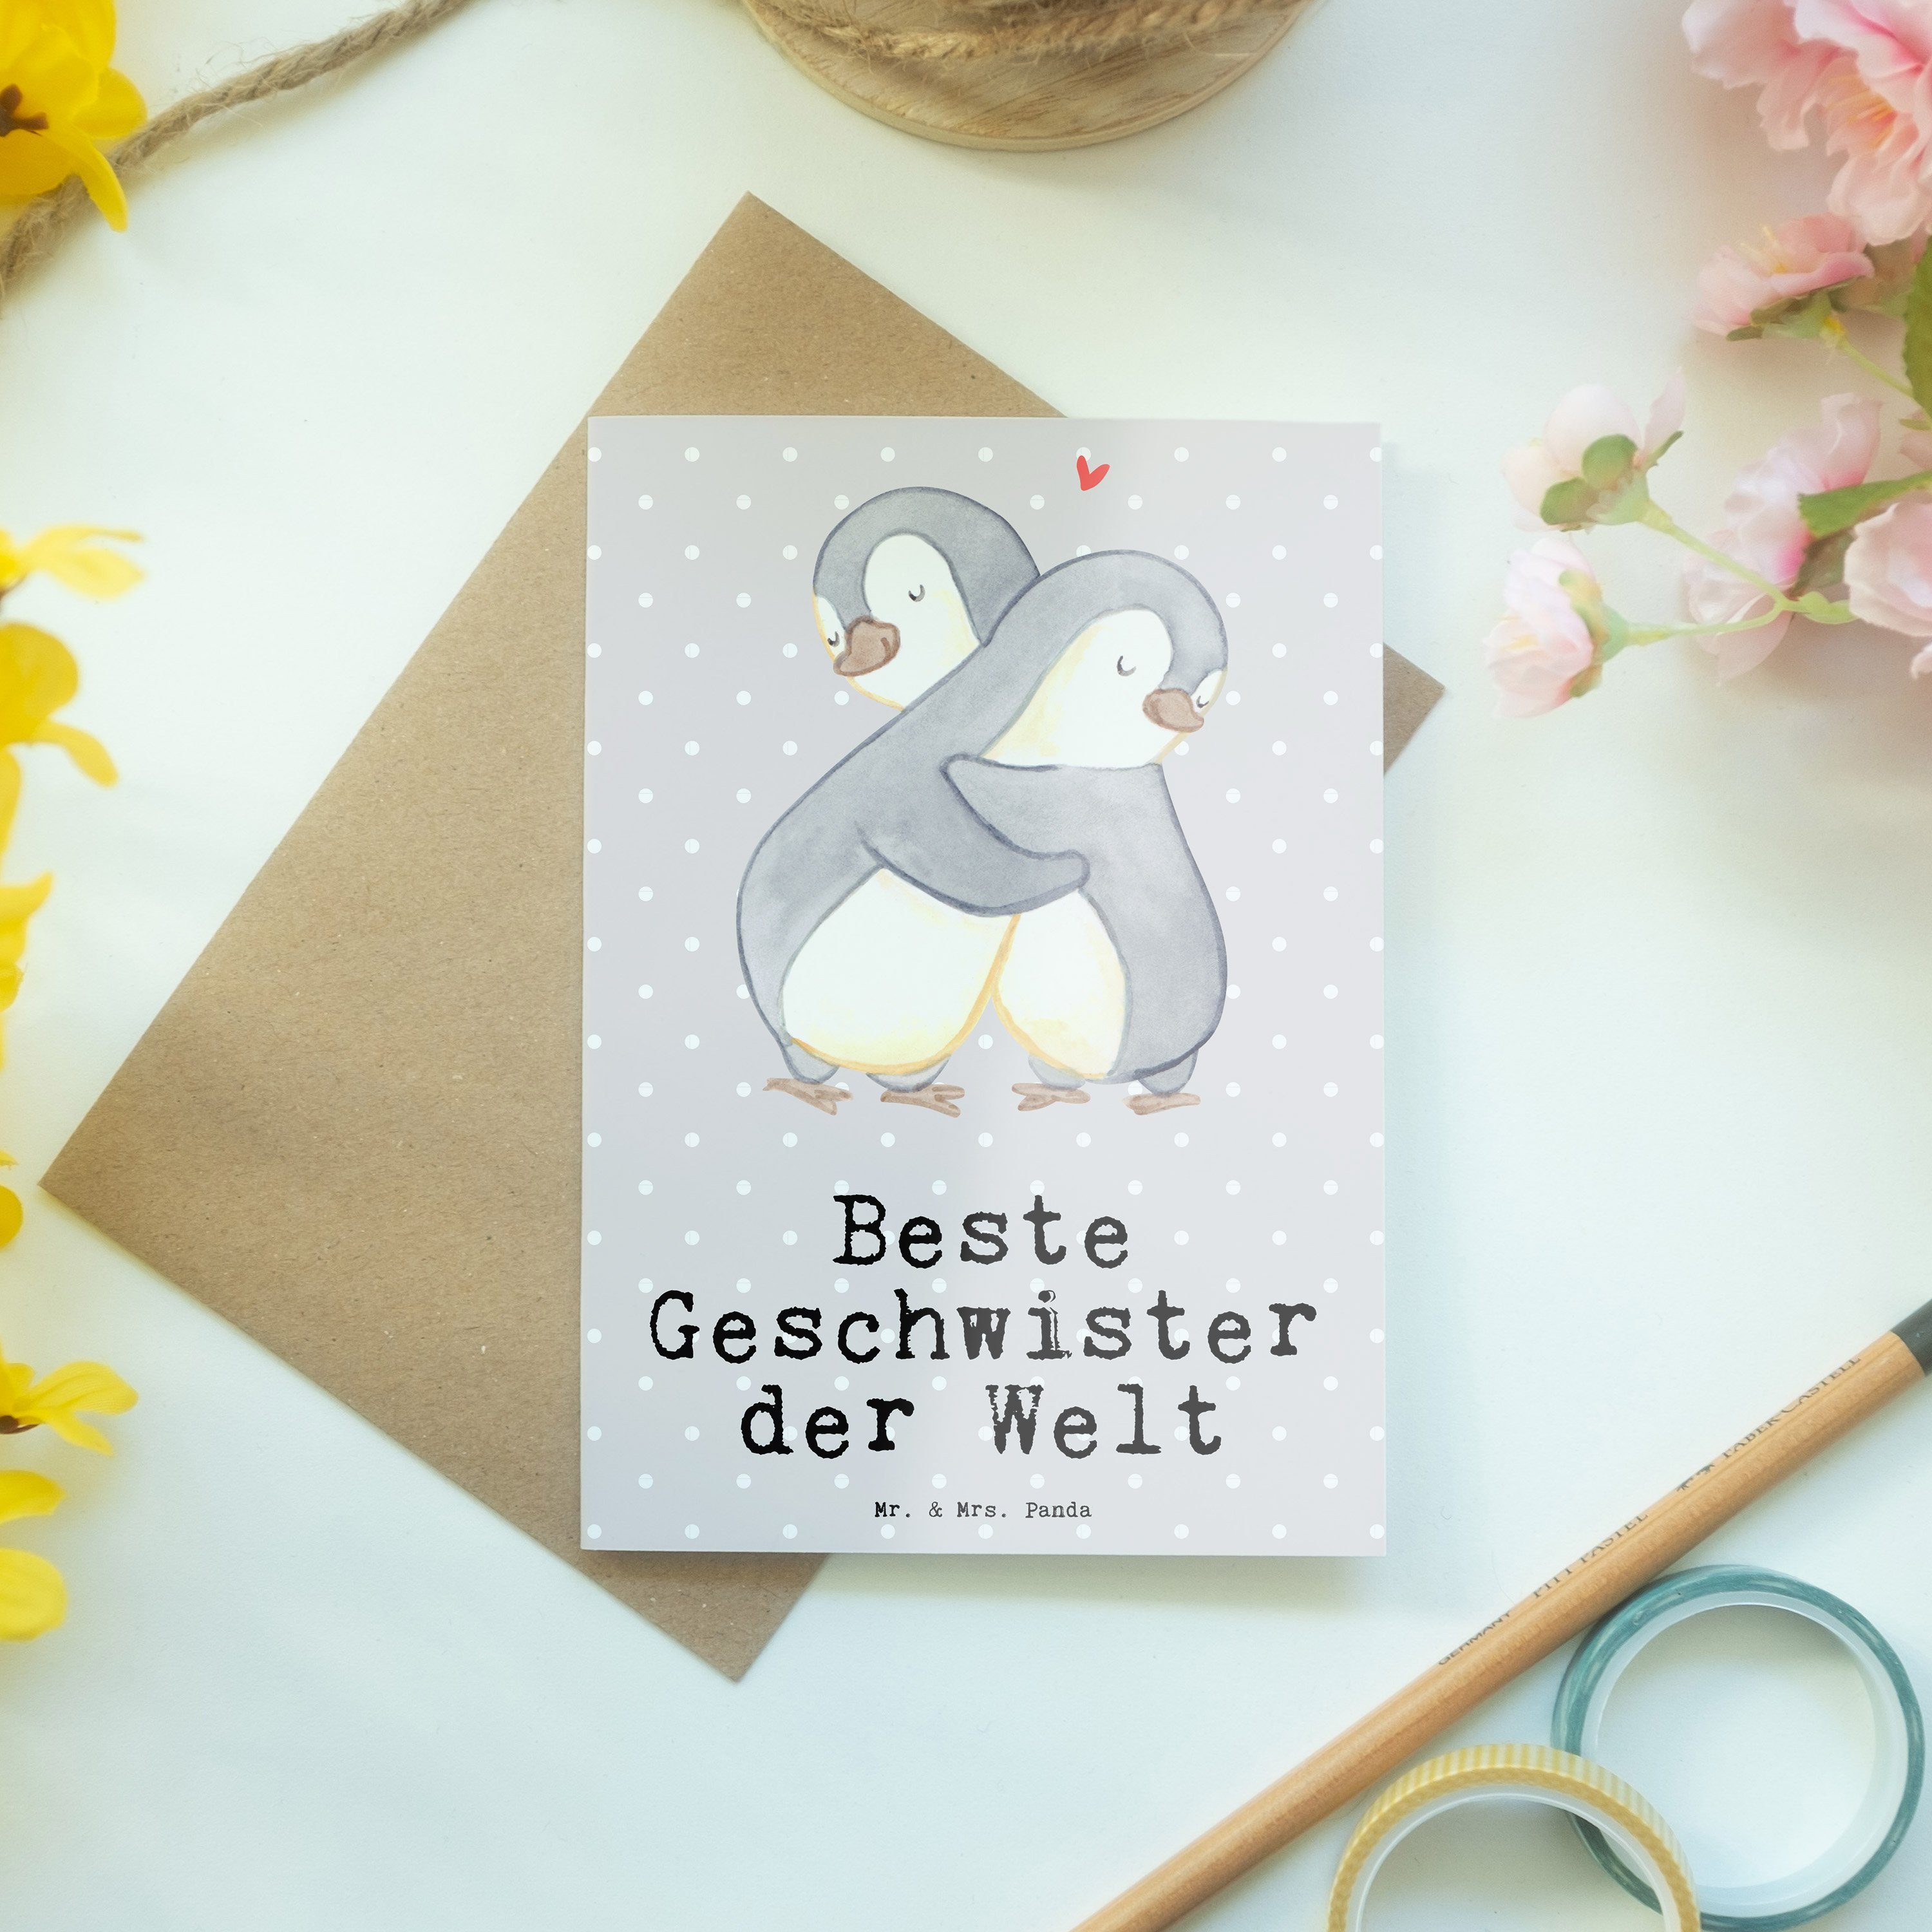 Mr. & Mrs. - Grau Geschenk, Karte Grußkarte Beste Welt - Geschwister Panda Pinguin Pastell der